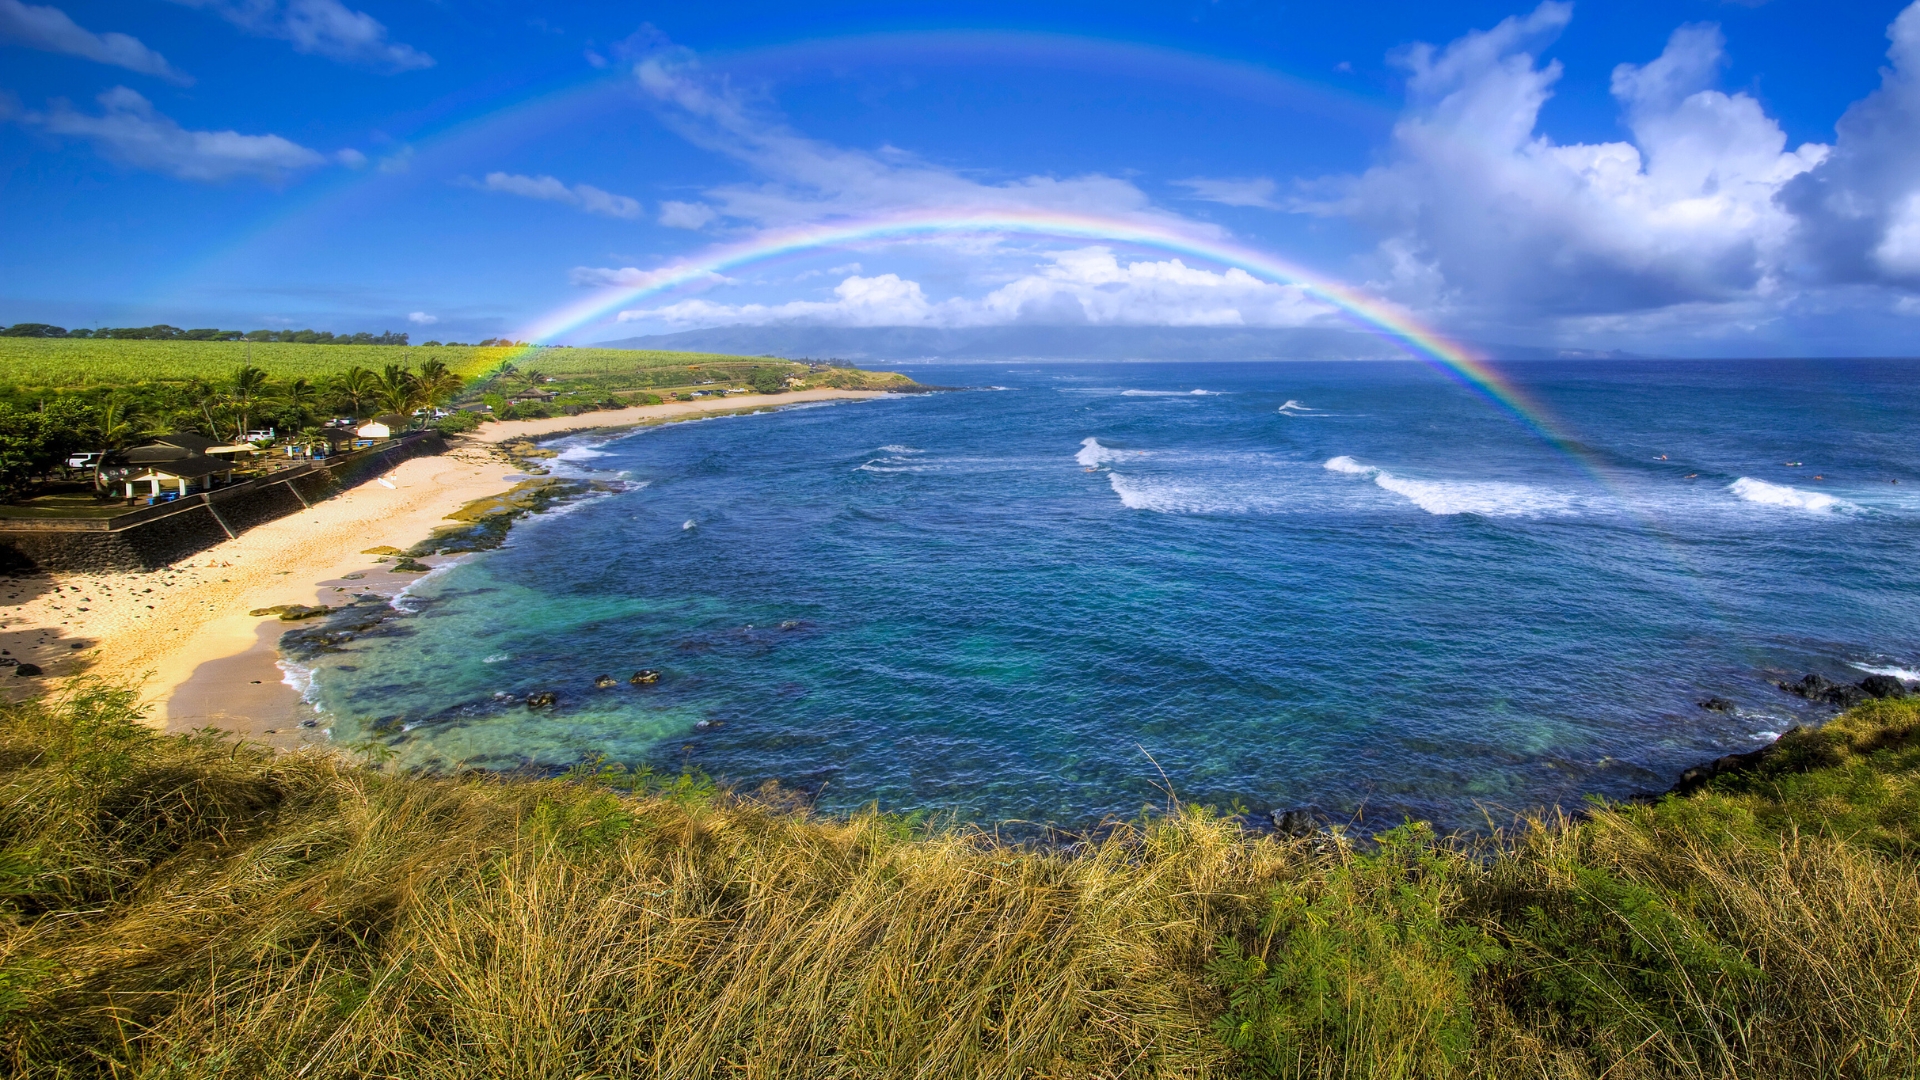 Maui - Weather and Seasons